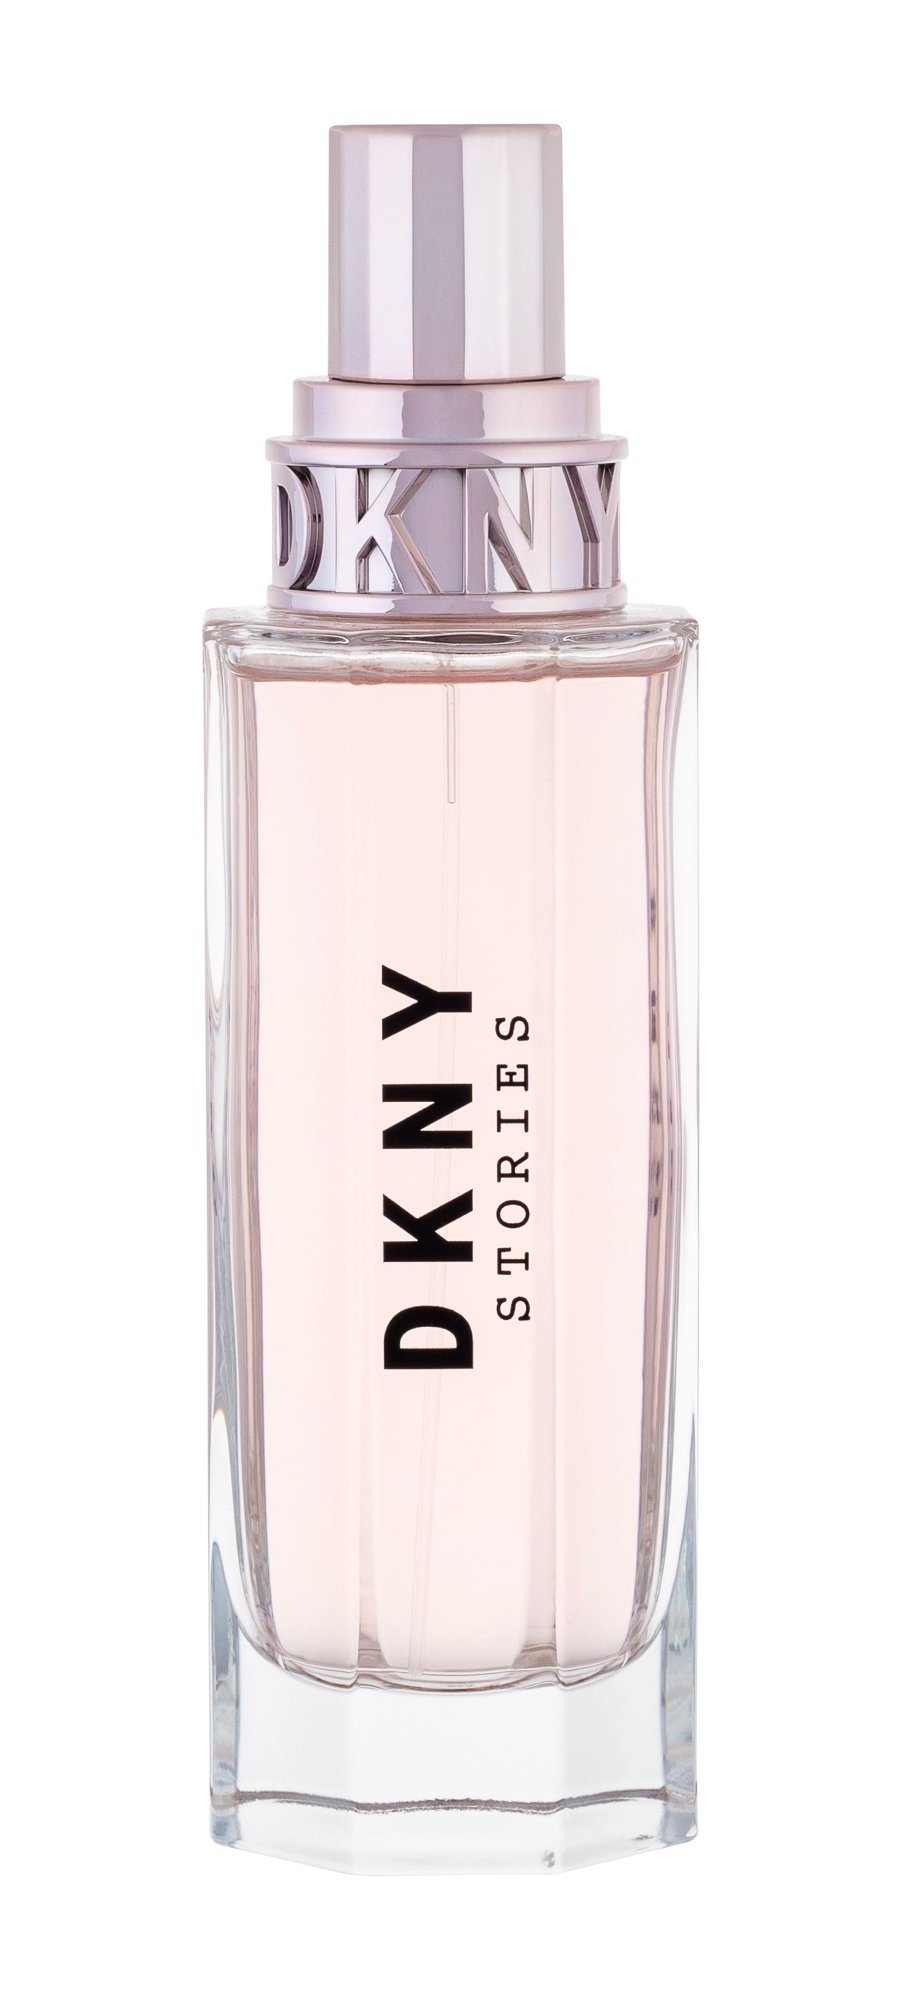 DKNY DKNY Stories, Parfumovaná voda 100ml